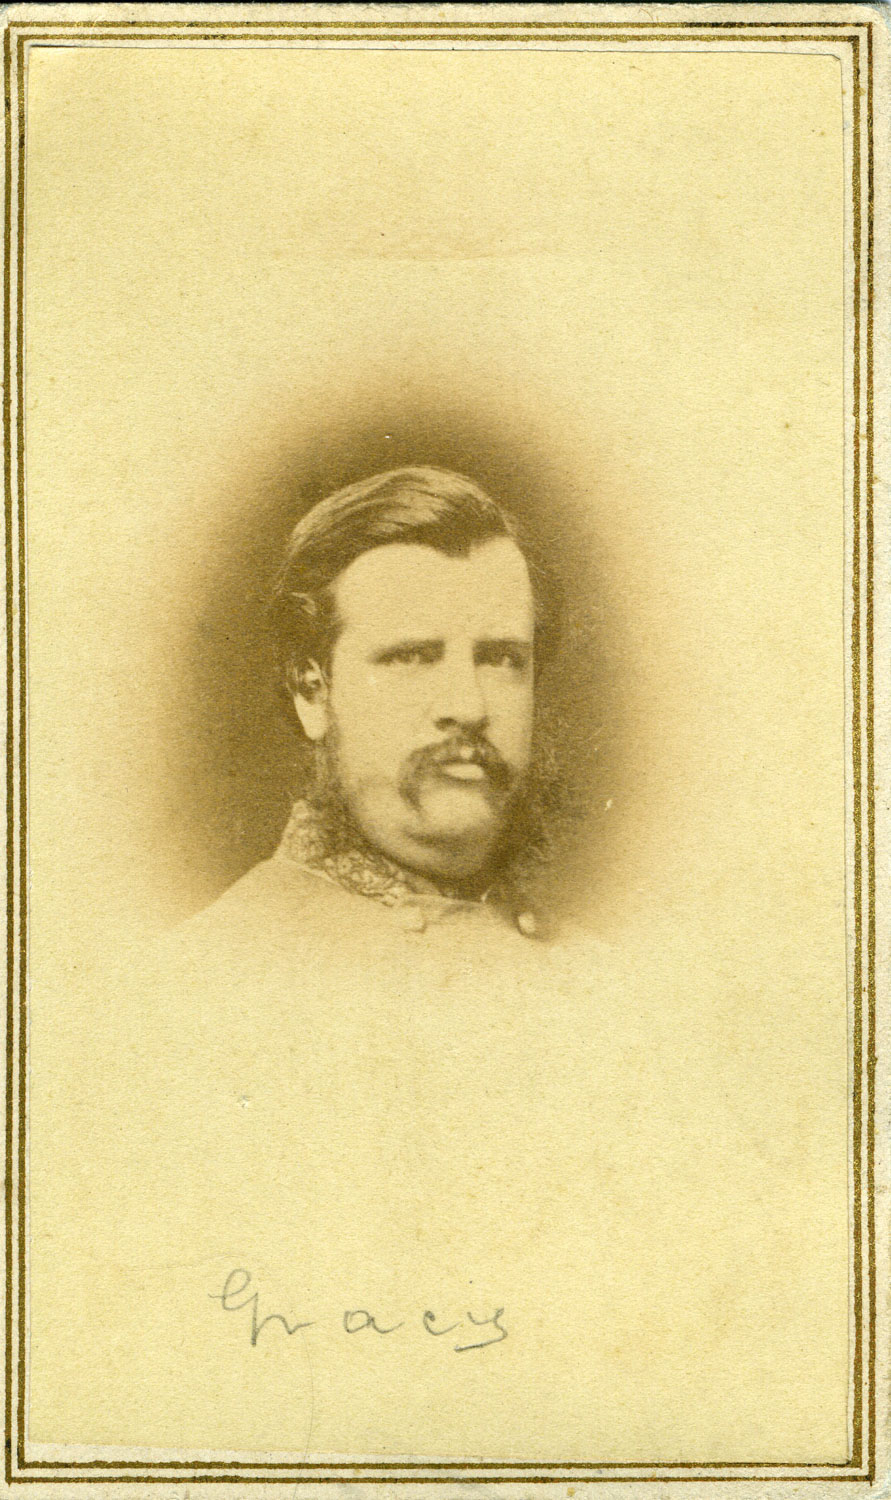 Brigadier General Archibald Gracie